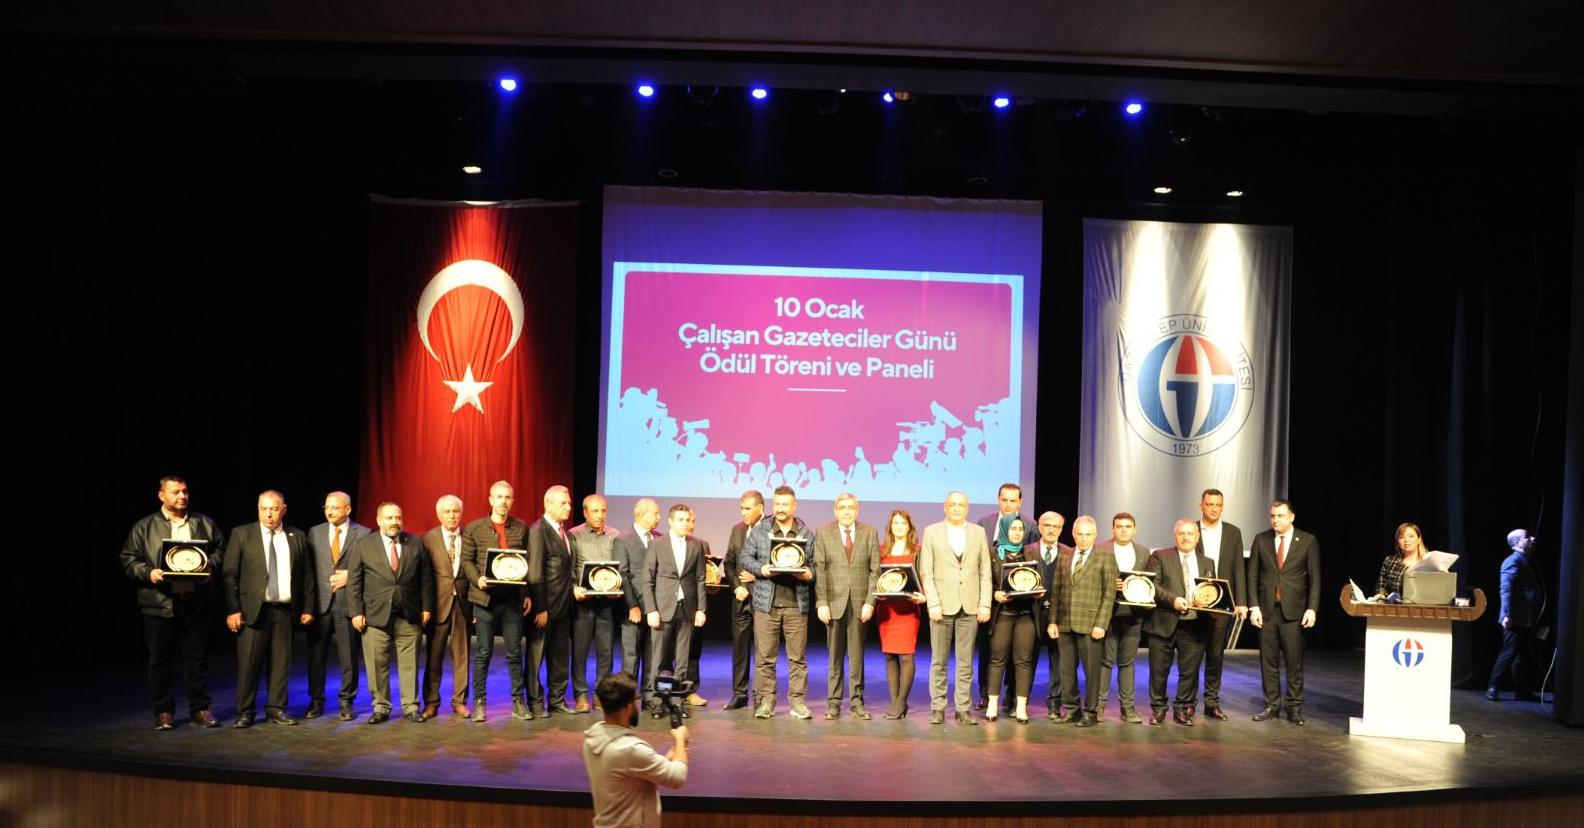 Güneydoğu Anadolu Gazeteciler Federasyonu (GGF) tarafından düzenlenen geleneksel gazeteciler teşvik ödülleri sahiplerini buldu